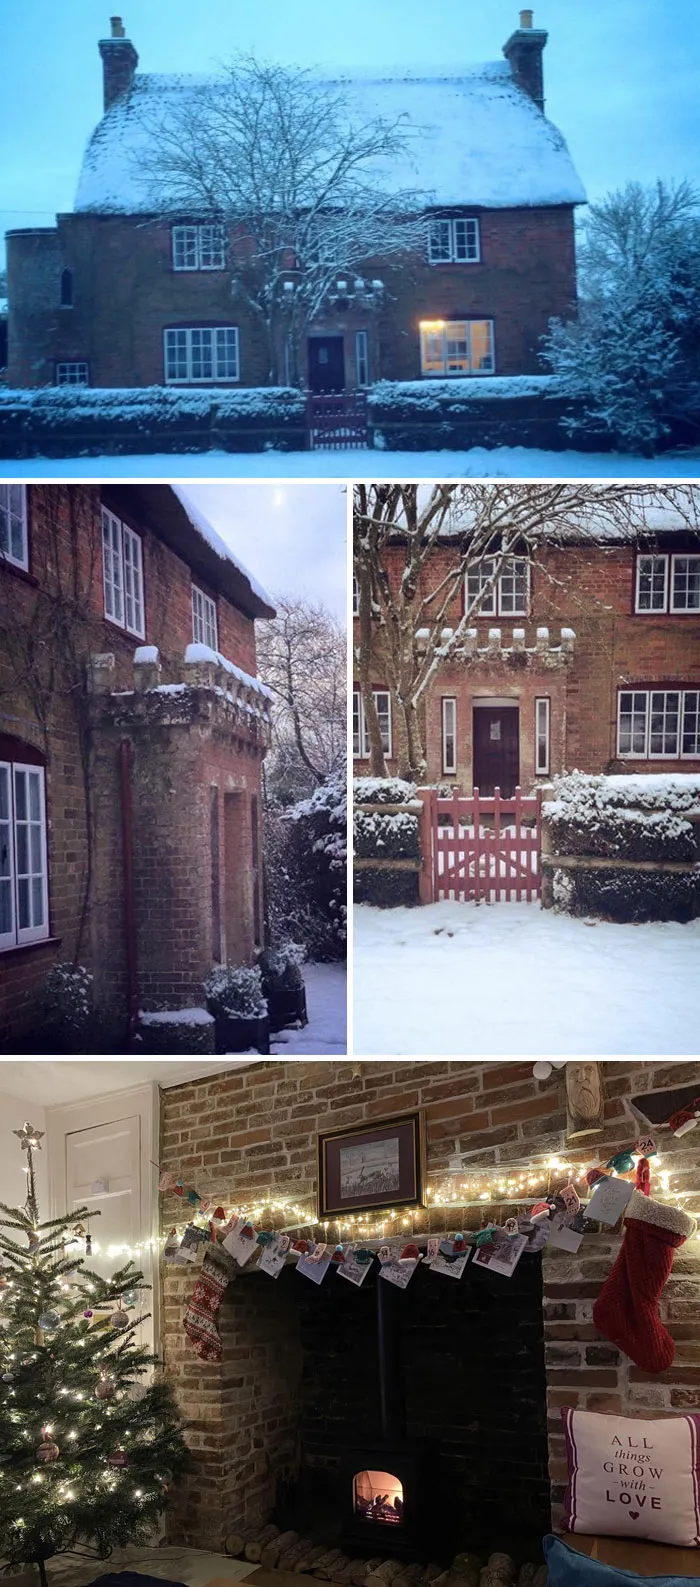 «Вот несколько праздничных фотографий нашего фермерского дома конца XVIII века, внесенного в список памятников архитектуры II категории, в Дорсете, Англия».